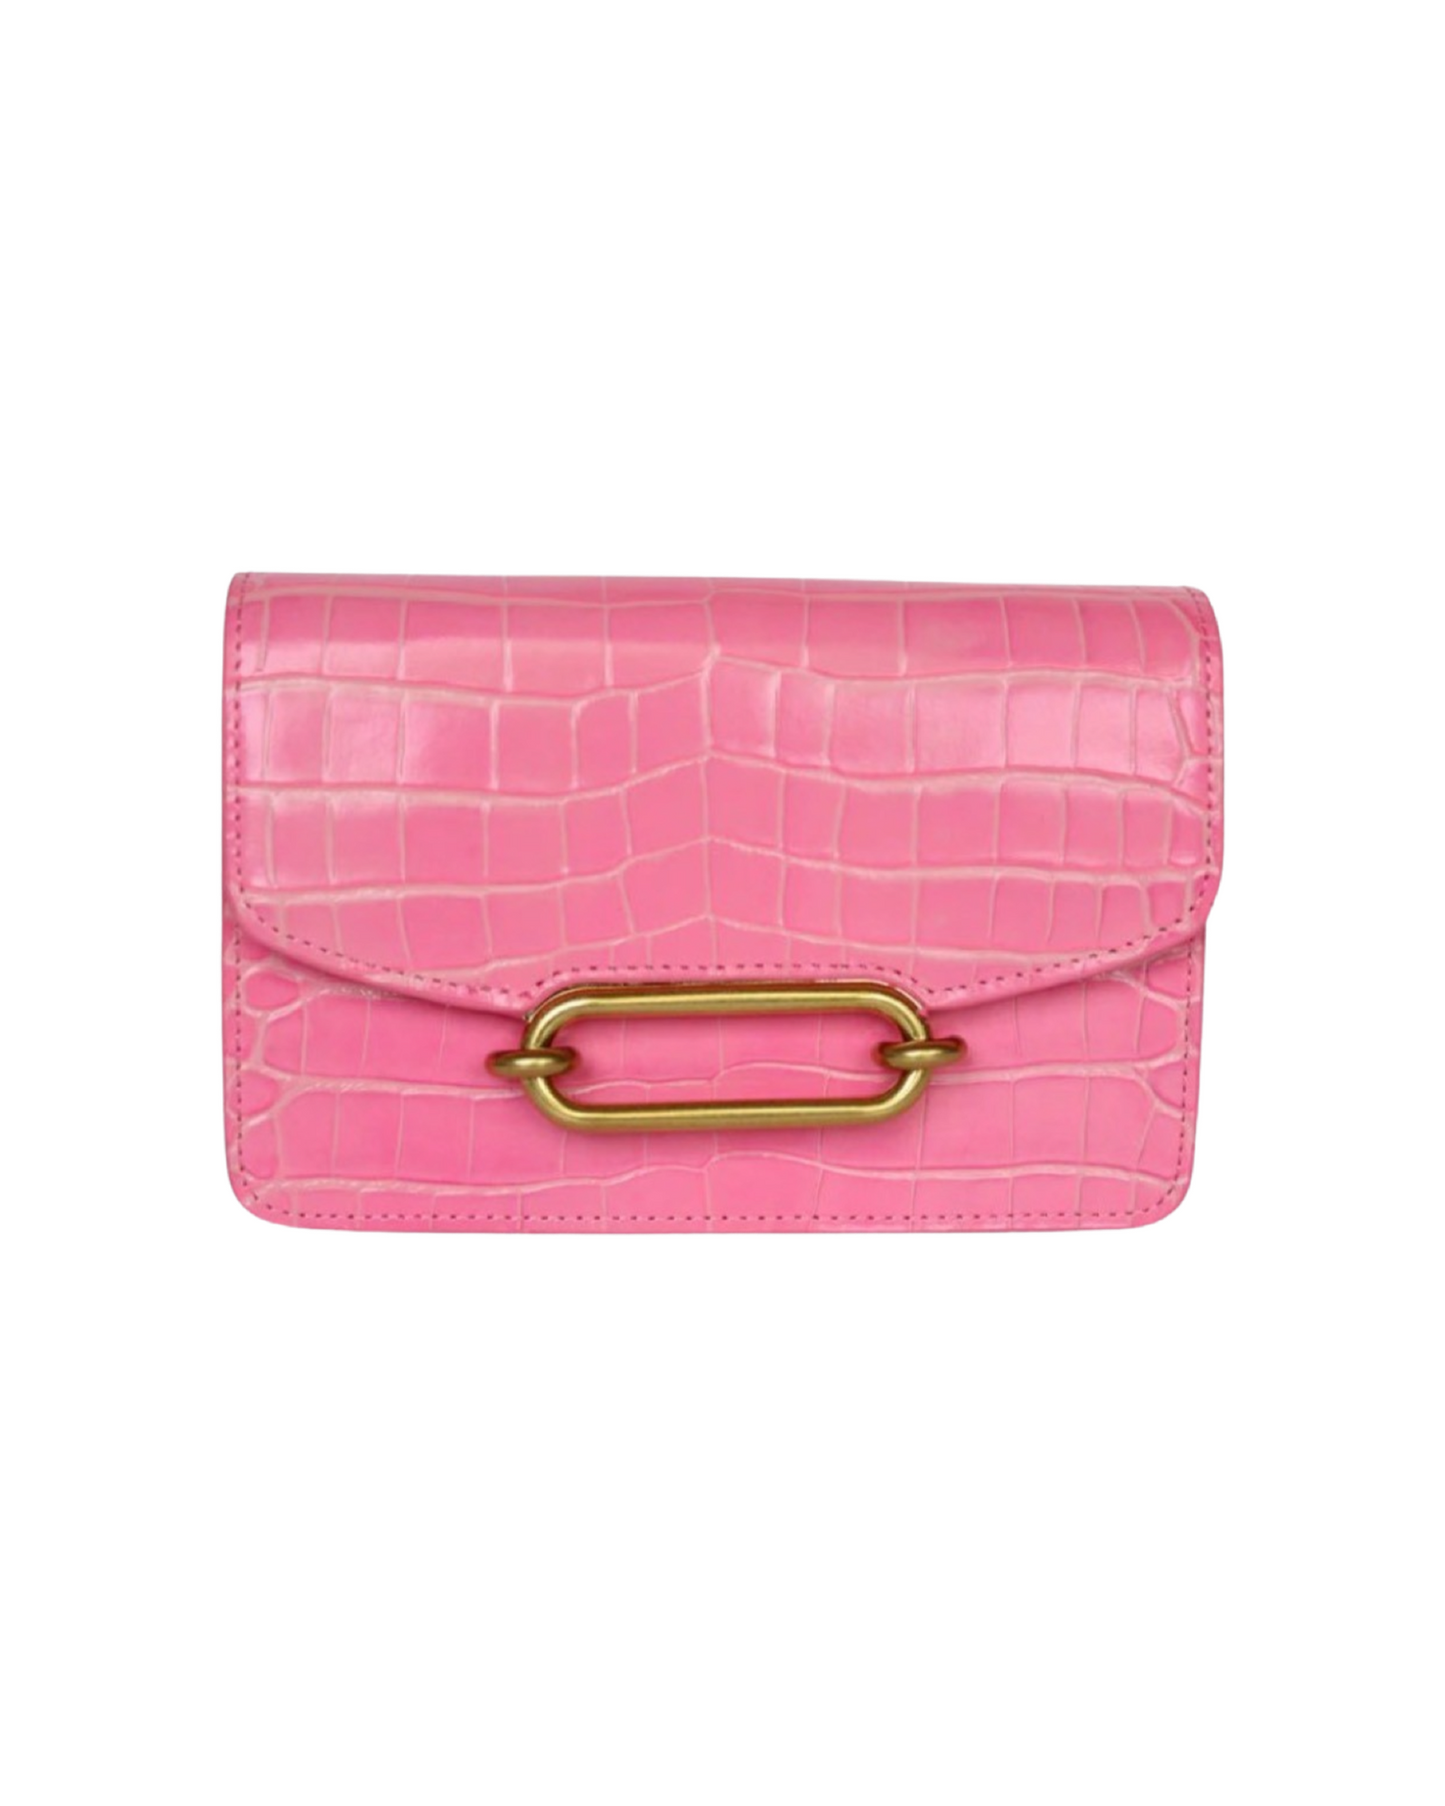 Franco Bag By Kathryn Wilson - Dolly Pink Croc